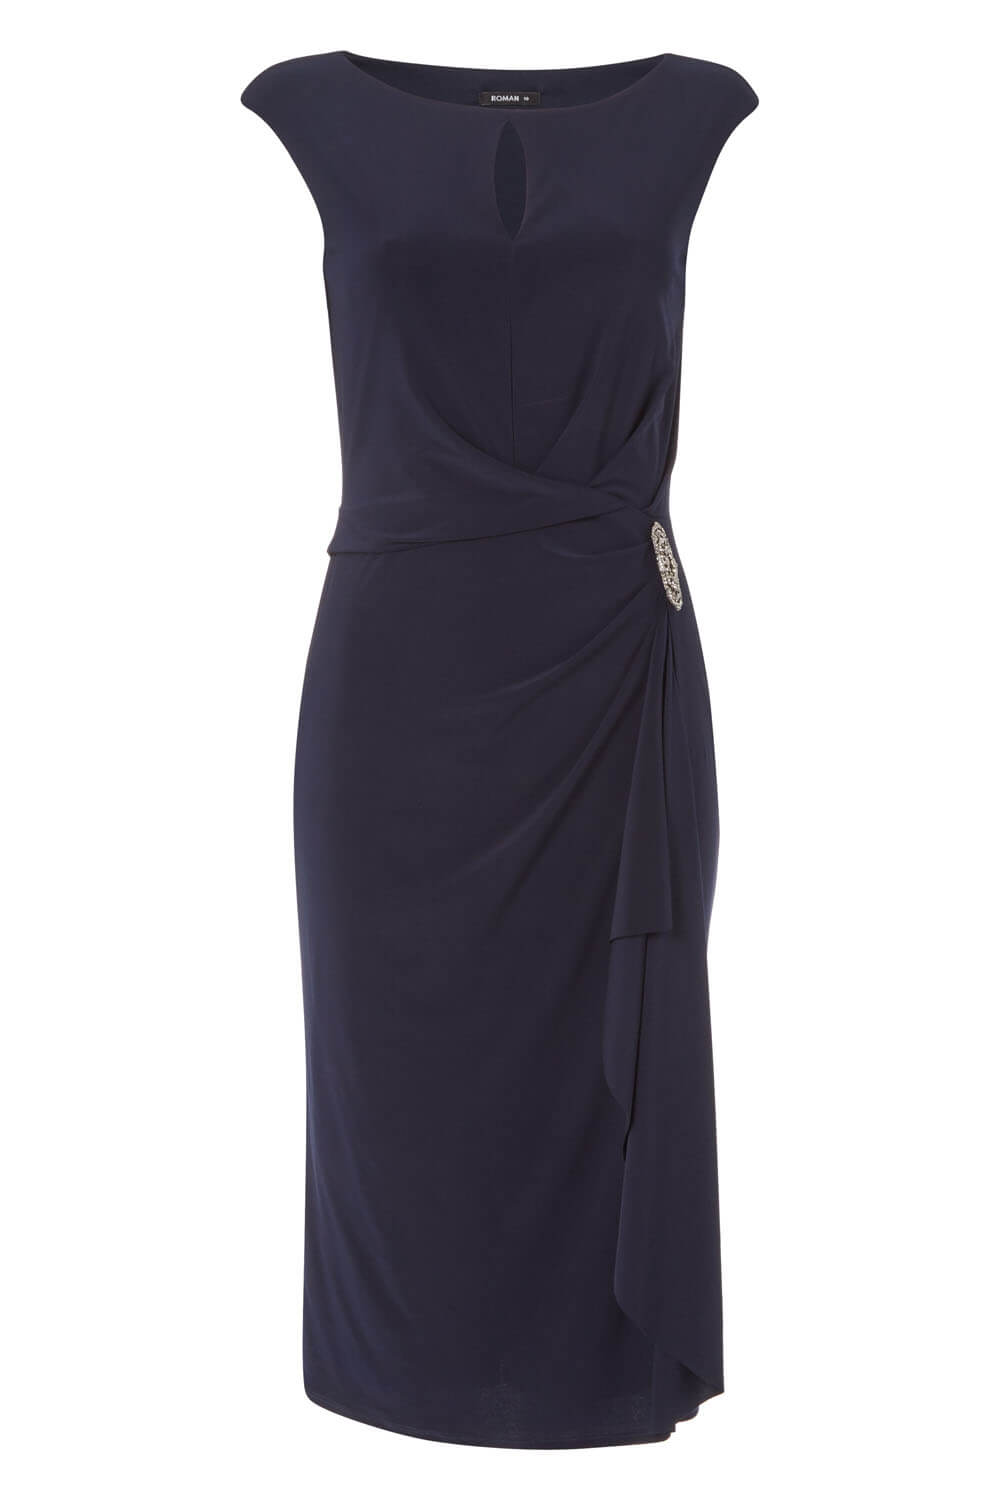 Embellished Waterfall Midi Dress in Midnight Blue - Roman Originals UK